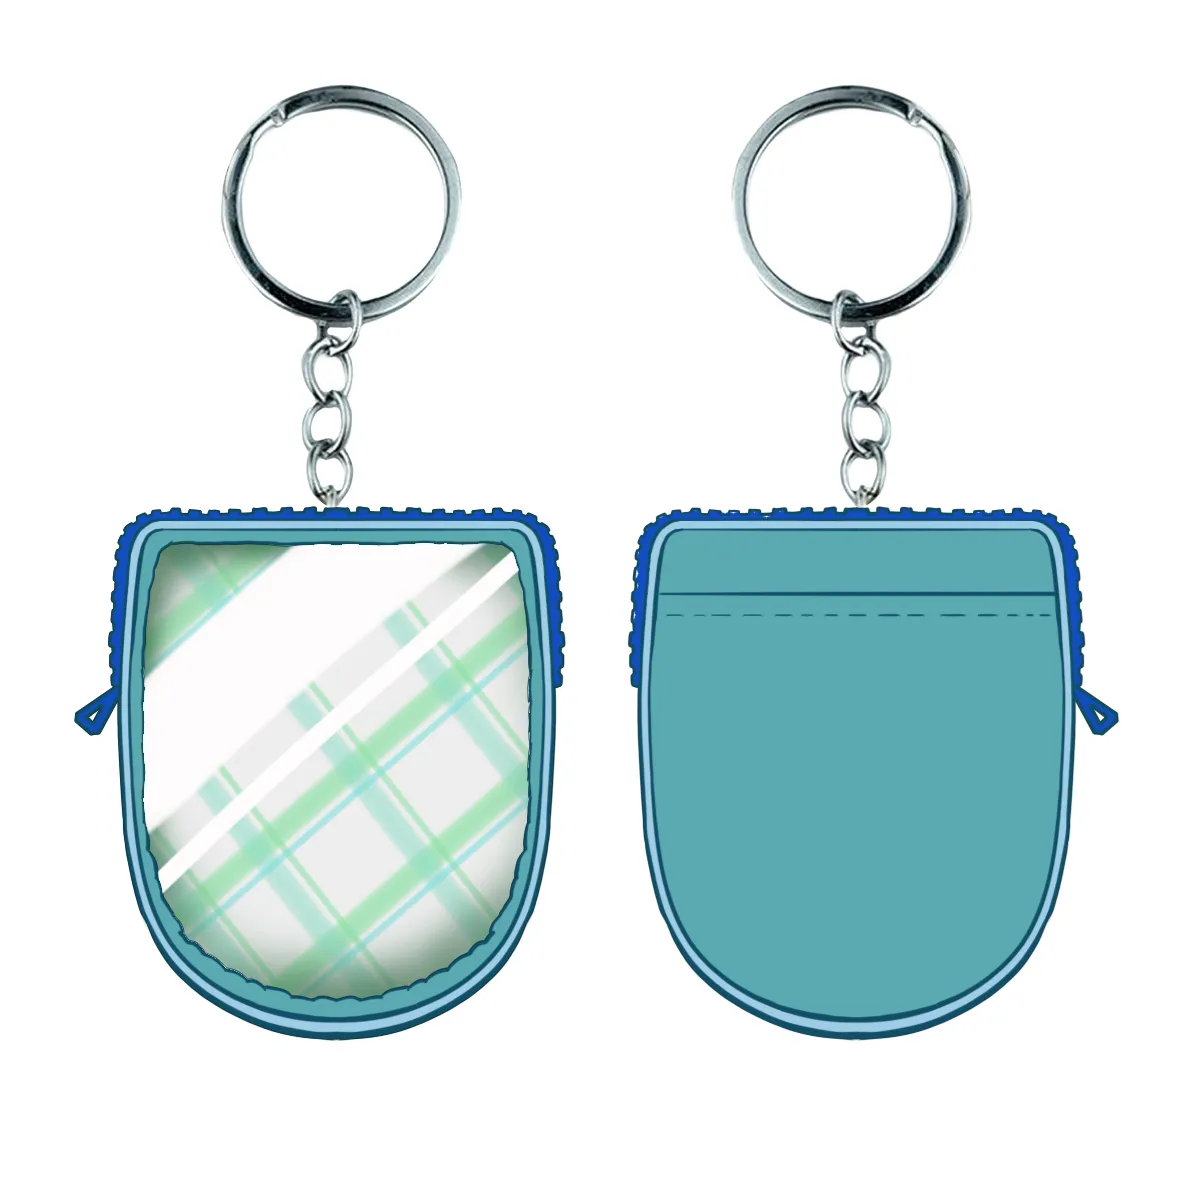 Peluches กระเป๋าใส่เหรียญลายสก็อตสีฟ้า,กระเป๋าหรูหราออกแบบเองได้ทั่วไปกระเป๋าสตางค์ใส่บัตรขนาดเล็ก